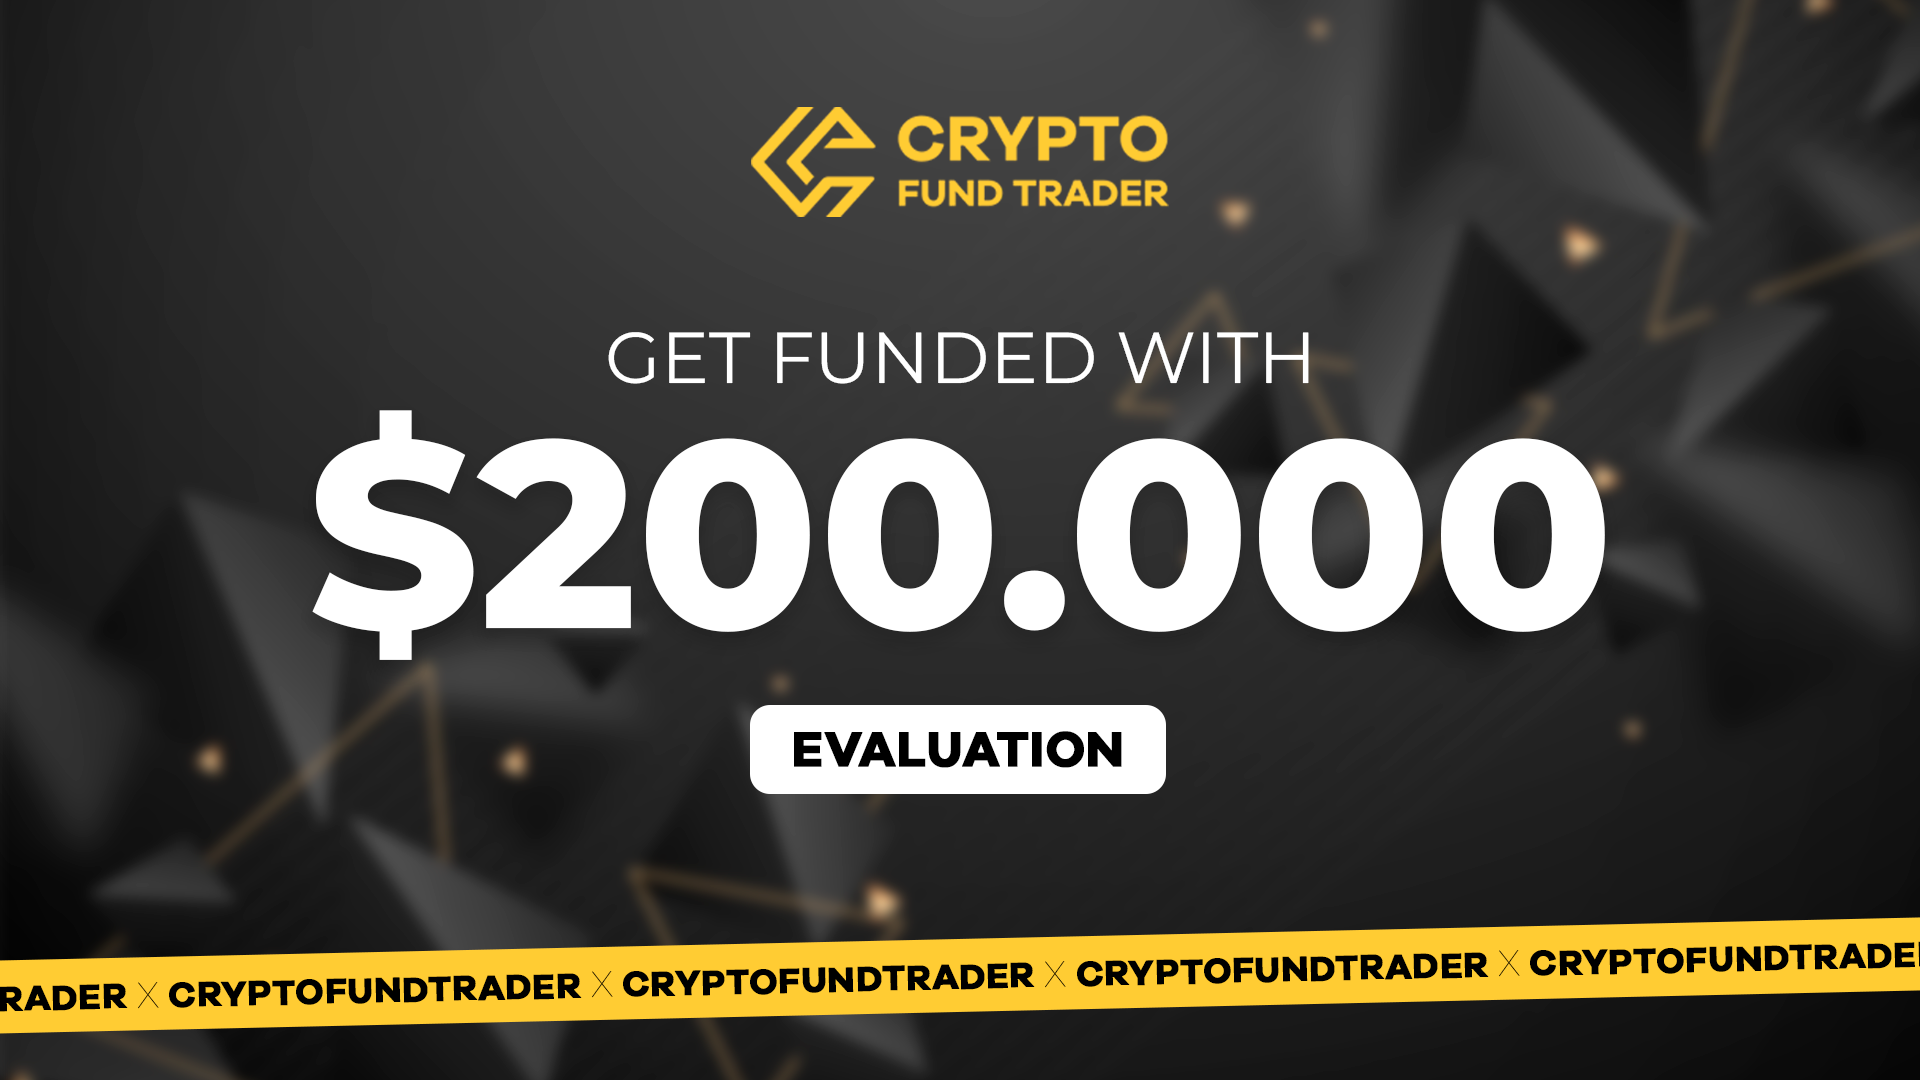 Crypto Fund Trader - $200.000 Evaluation Voucher 1127.7 usd